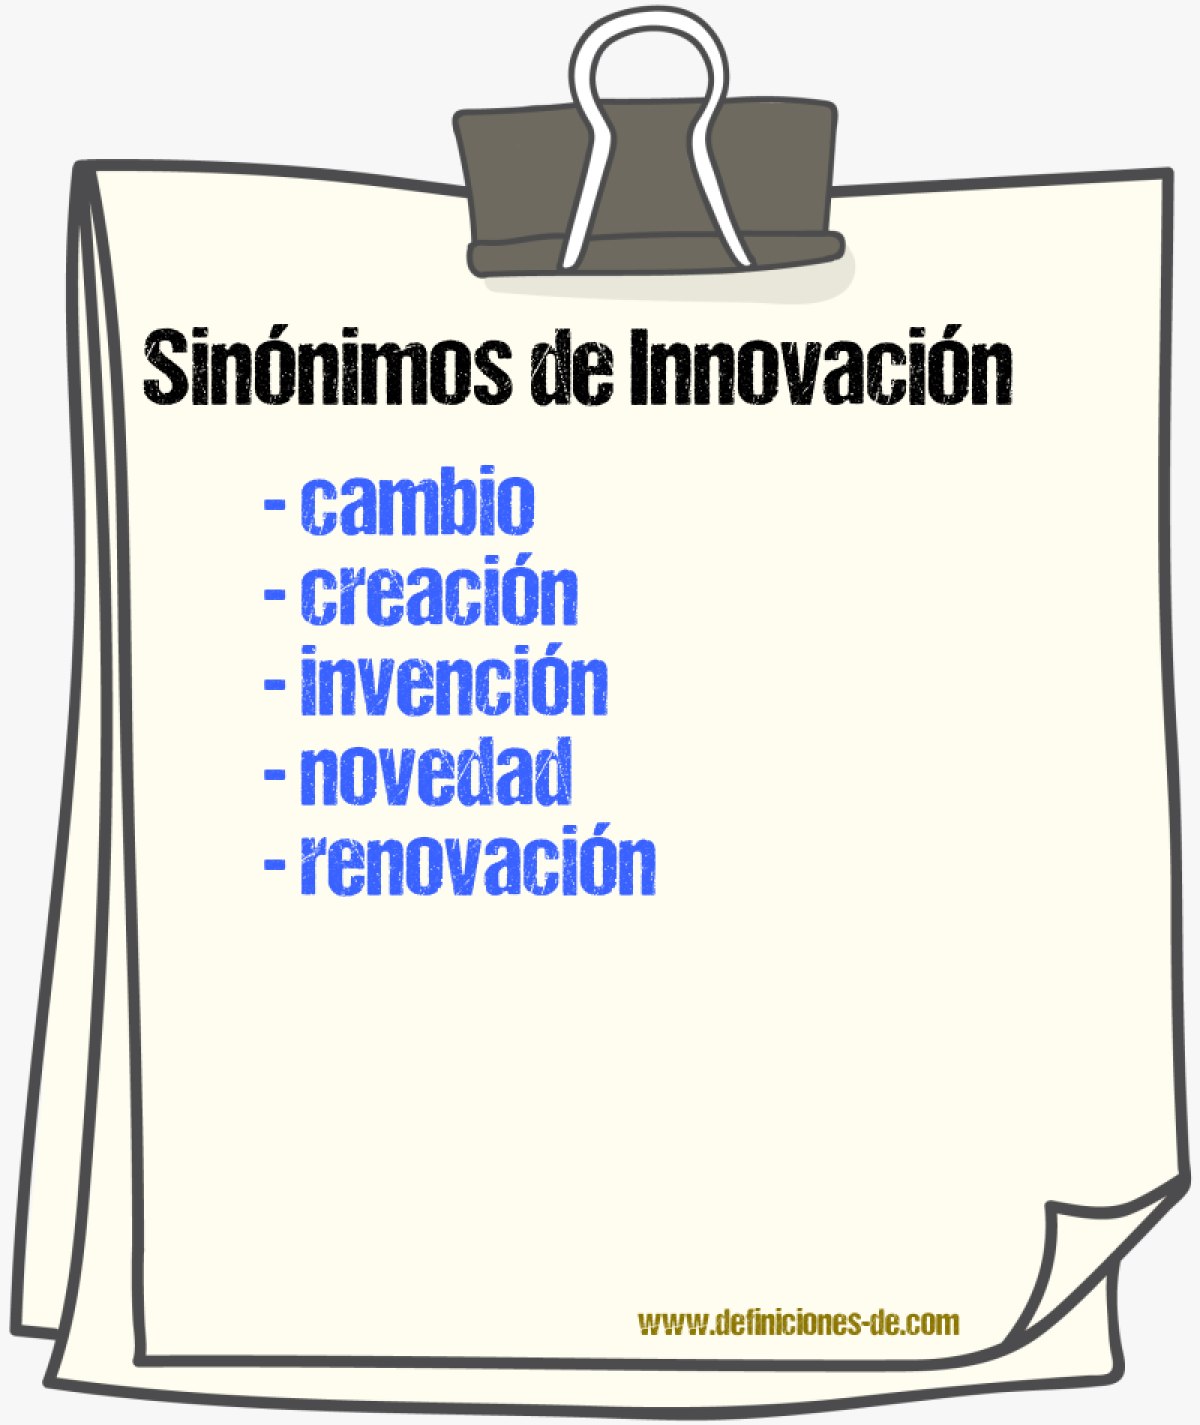 Sinónimos de innovación